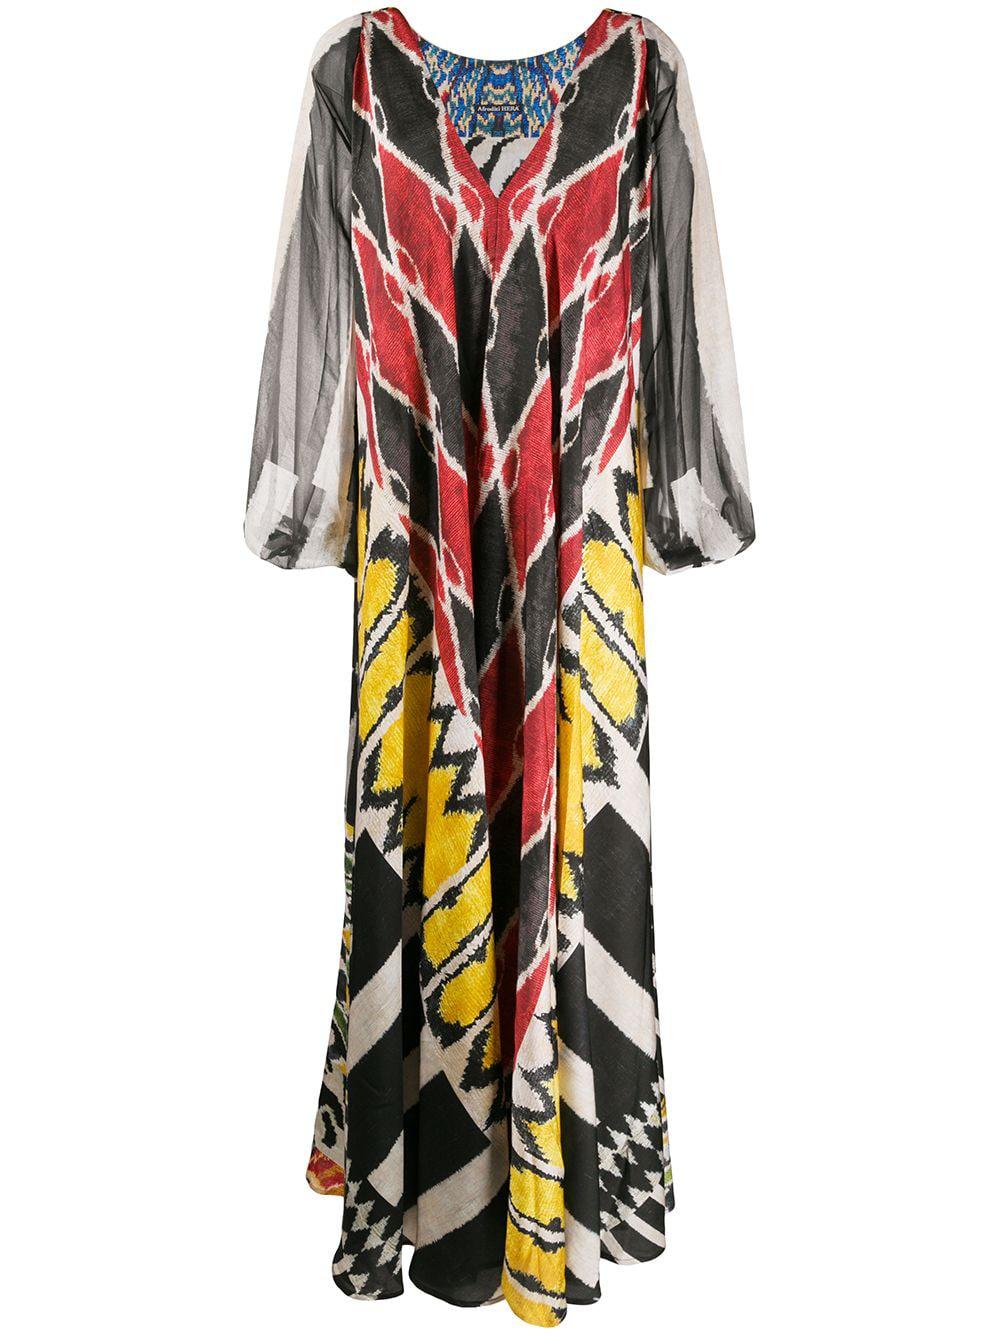 draped multi-pattern maxi dress by AFRODITI HERA